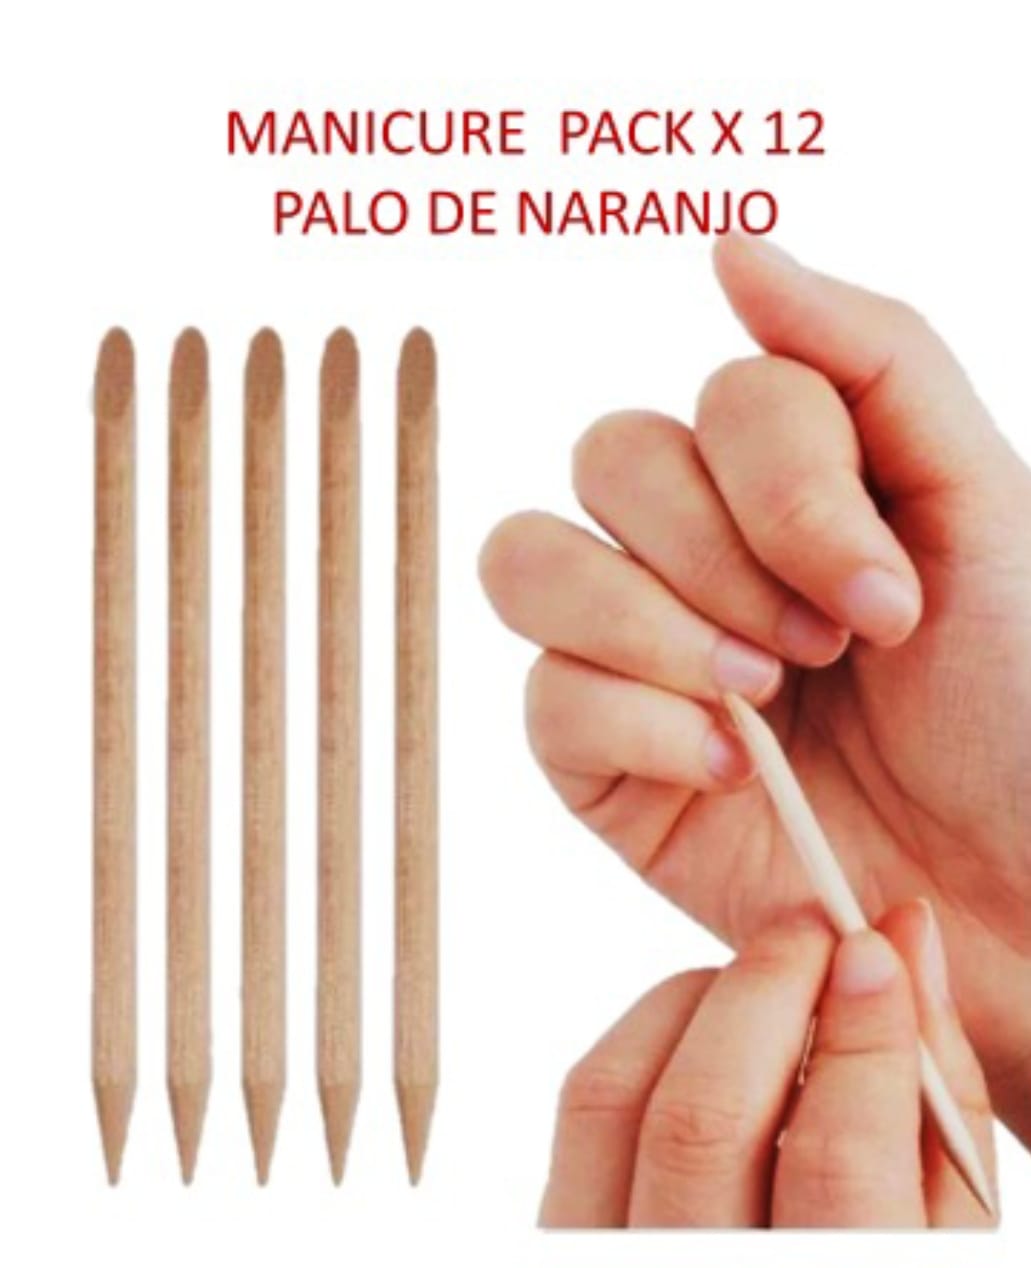 Palito de Naranja Pack x 12 - Manicure - Productos para Peluquería